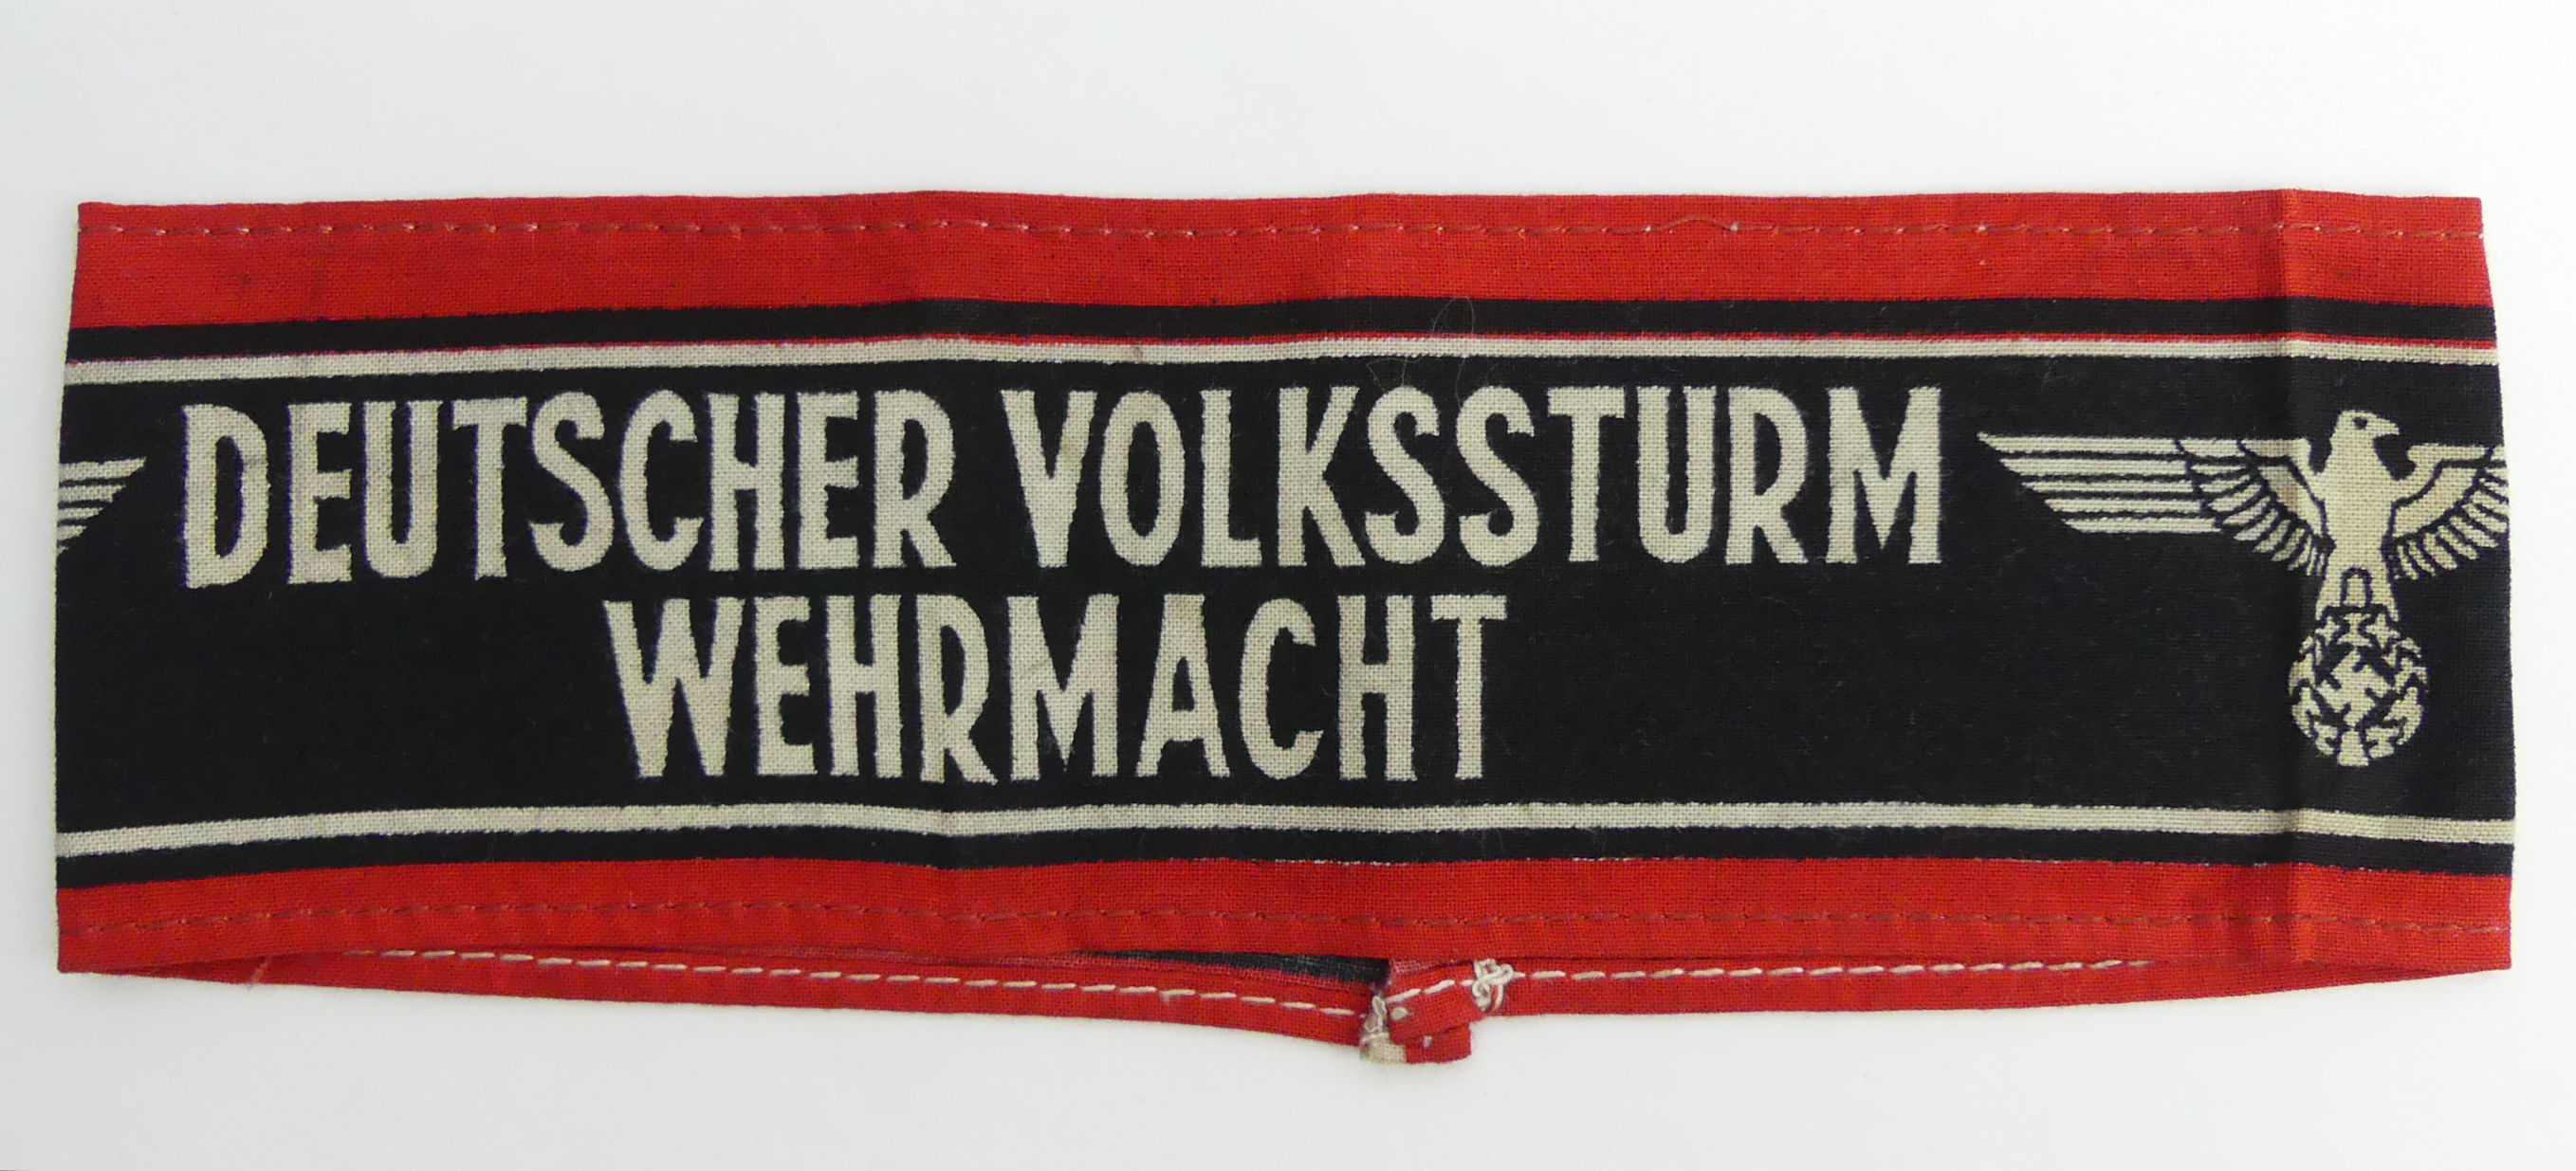 German Last Ditched "Deutscher Volkssturm Wehrmacht" armband from the Hanover region.